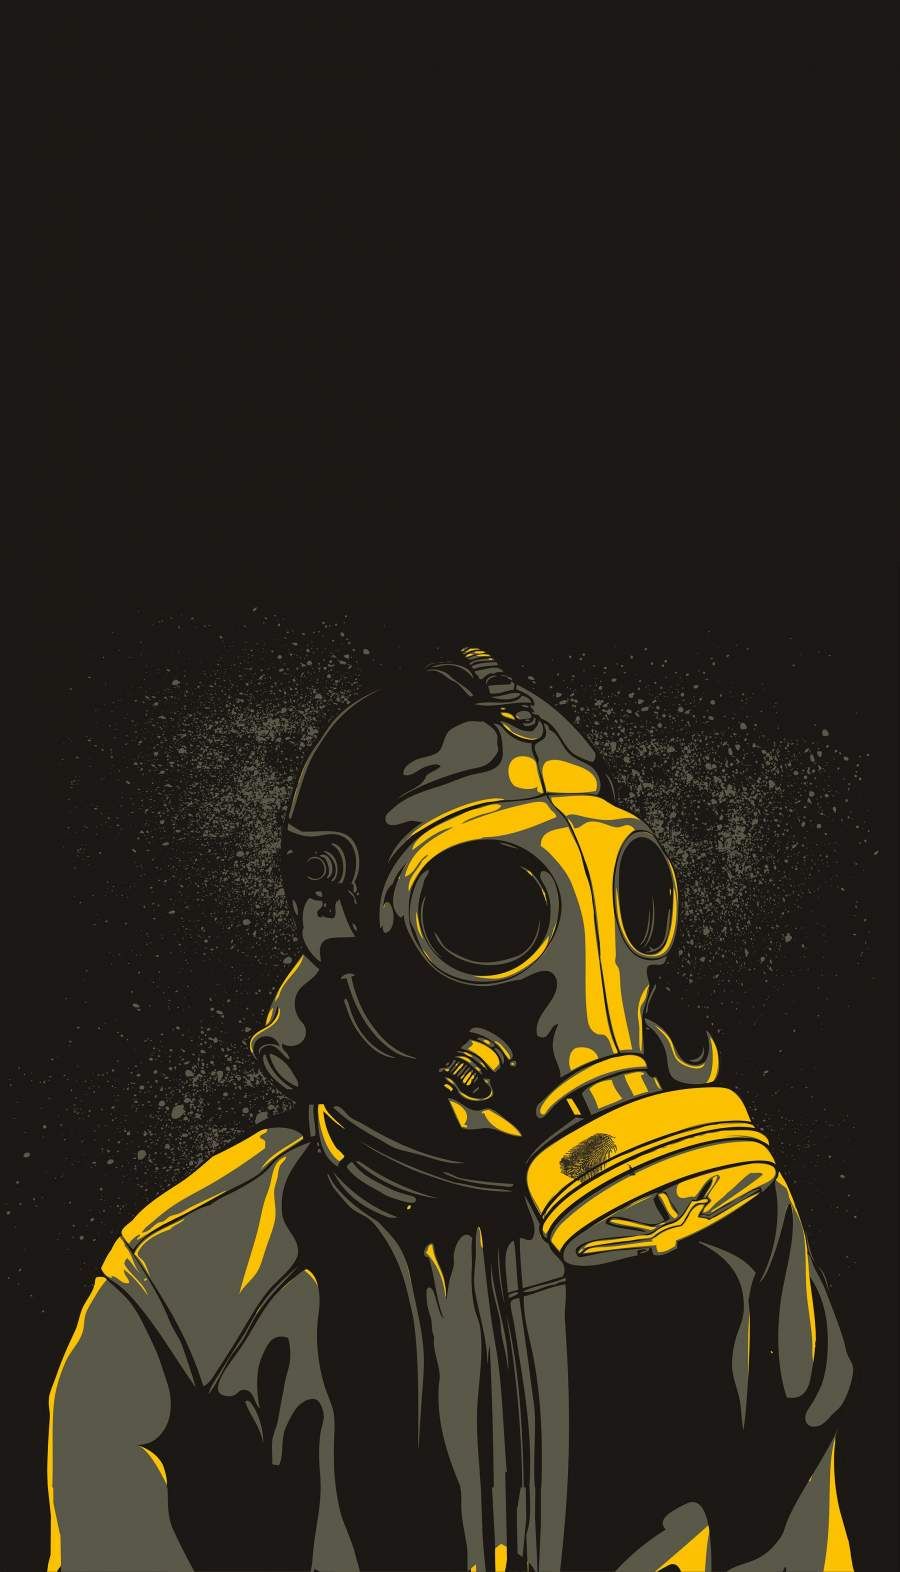 The Masked iPhone Wallpaper. Steampunk wallpaper, Gas mask art, Pop art wallpaper